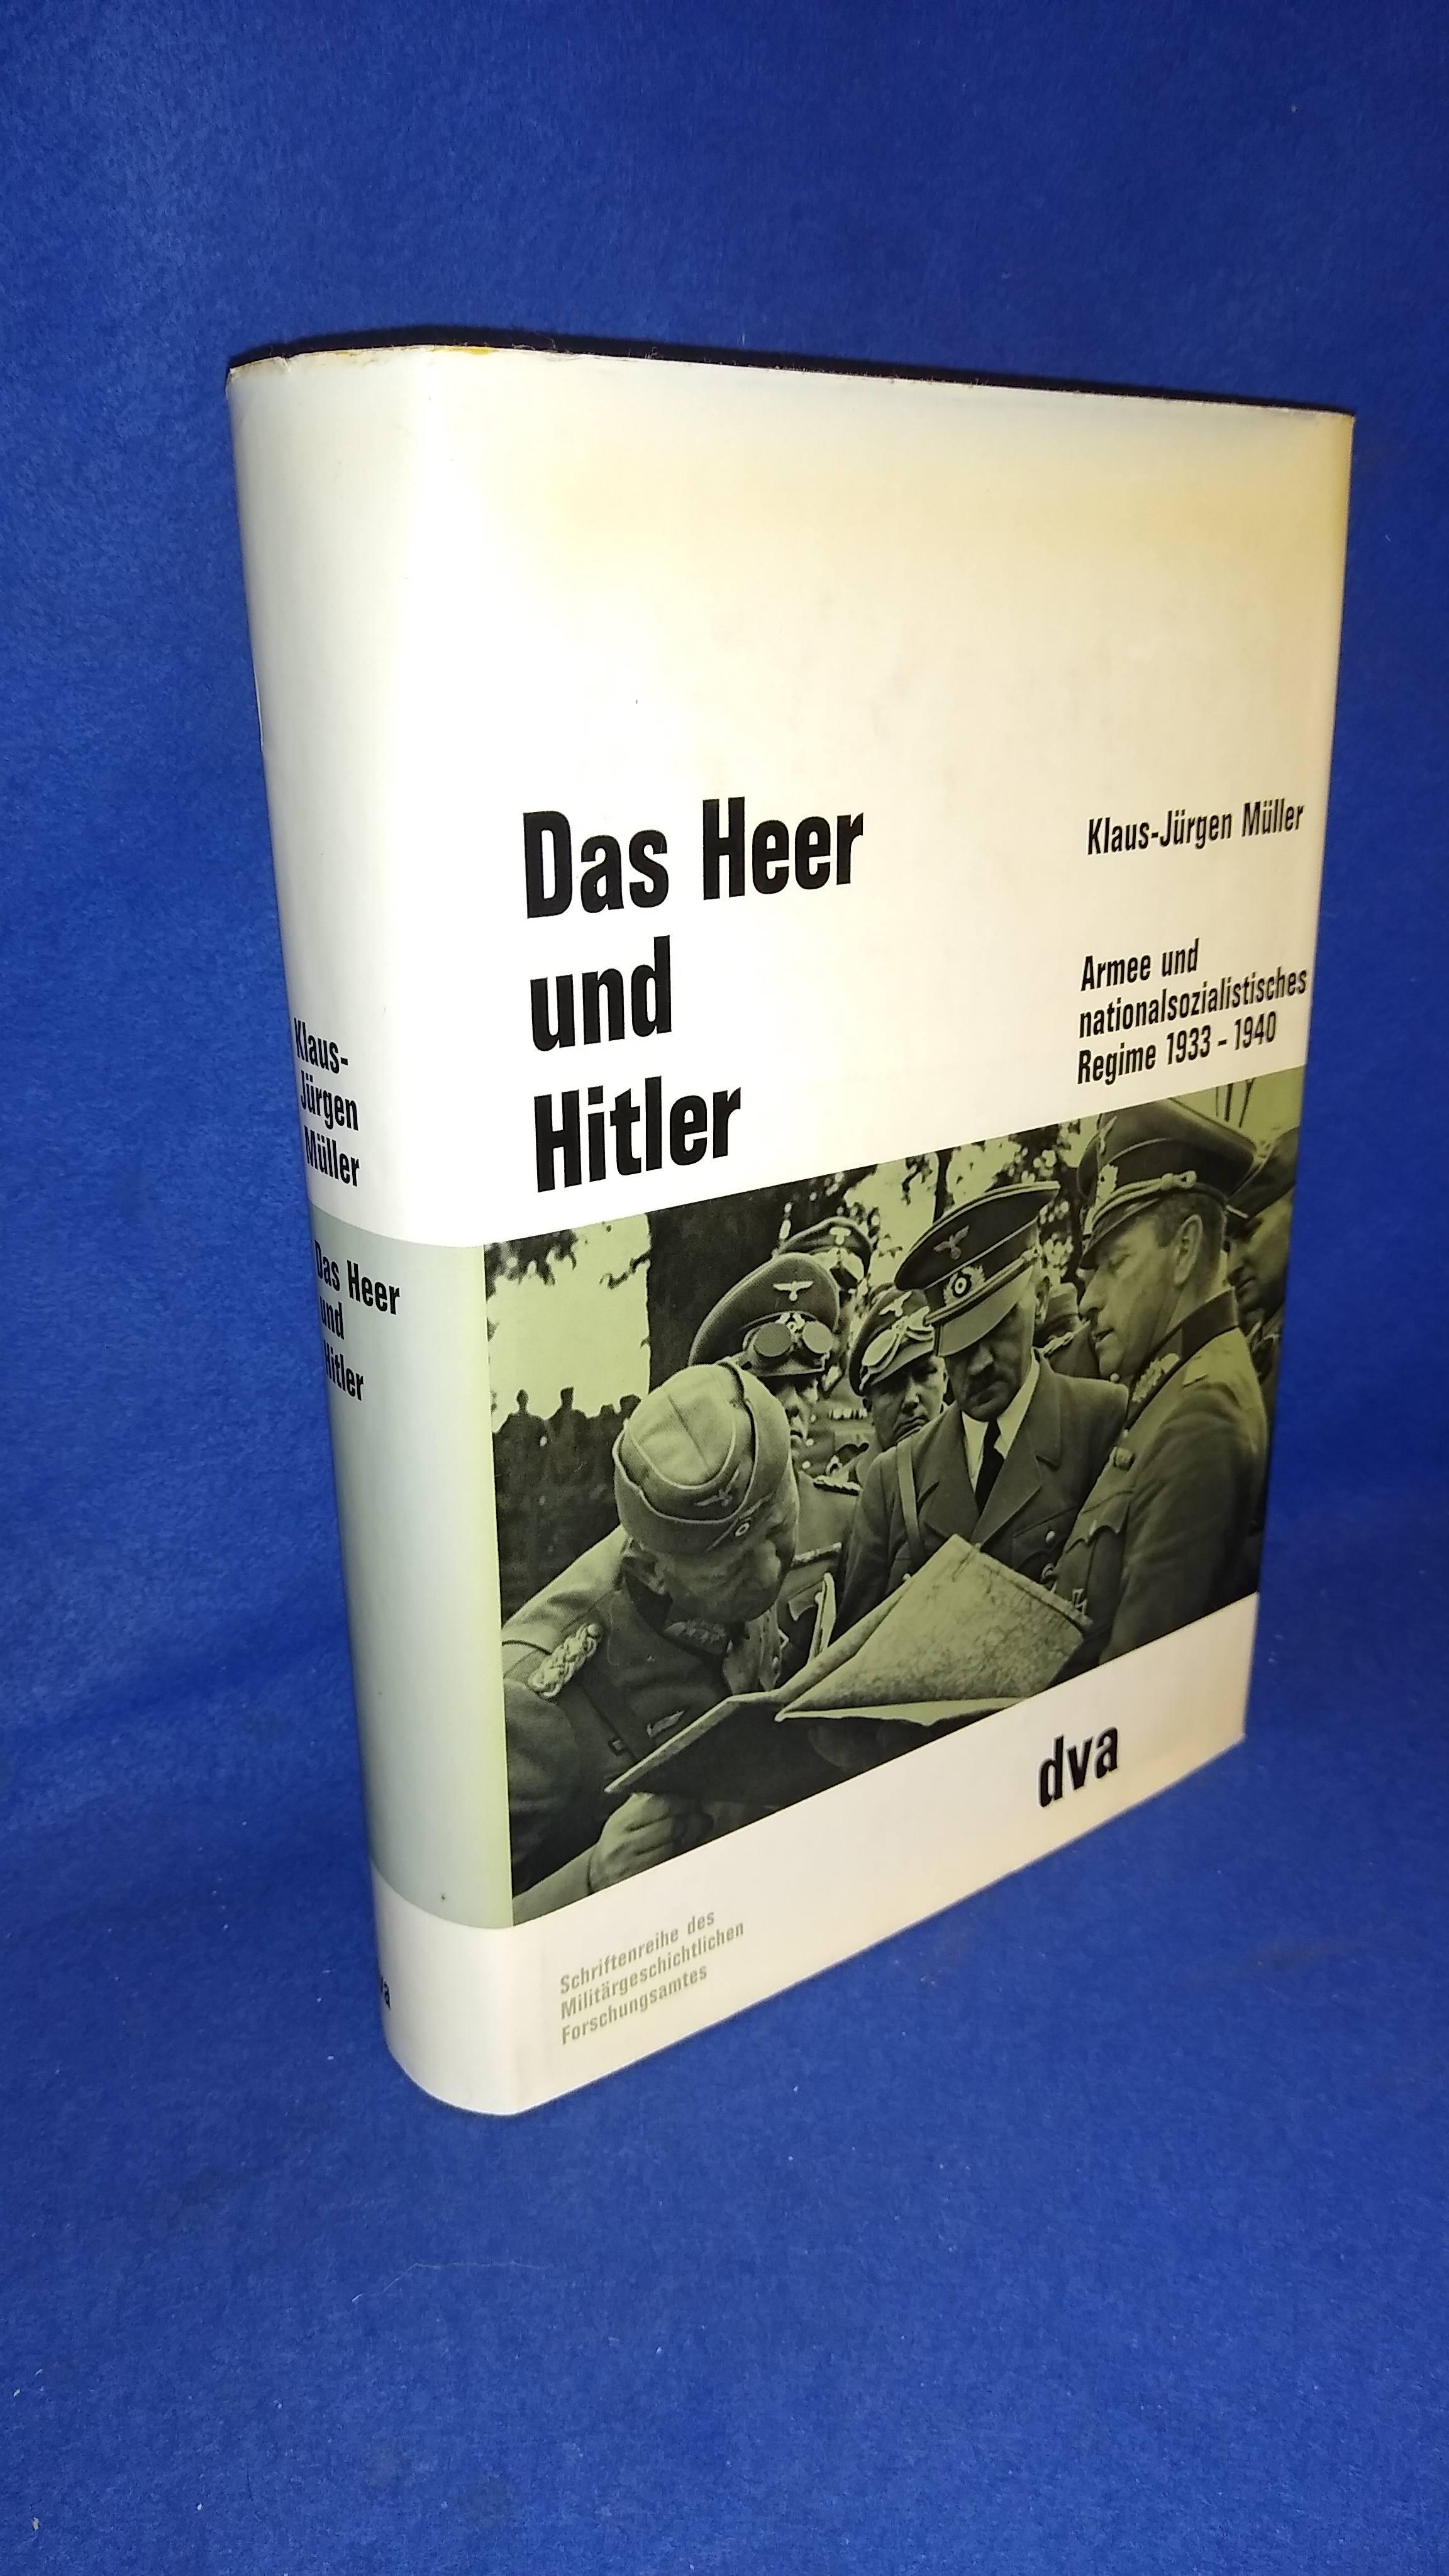 Beiträge zur Militär- und Kriegsgeschichte, Band 10: Das Heer und Hitler - Armee und nationalsozialistisches Regime 1933 - 1940